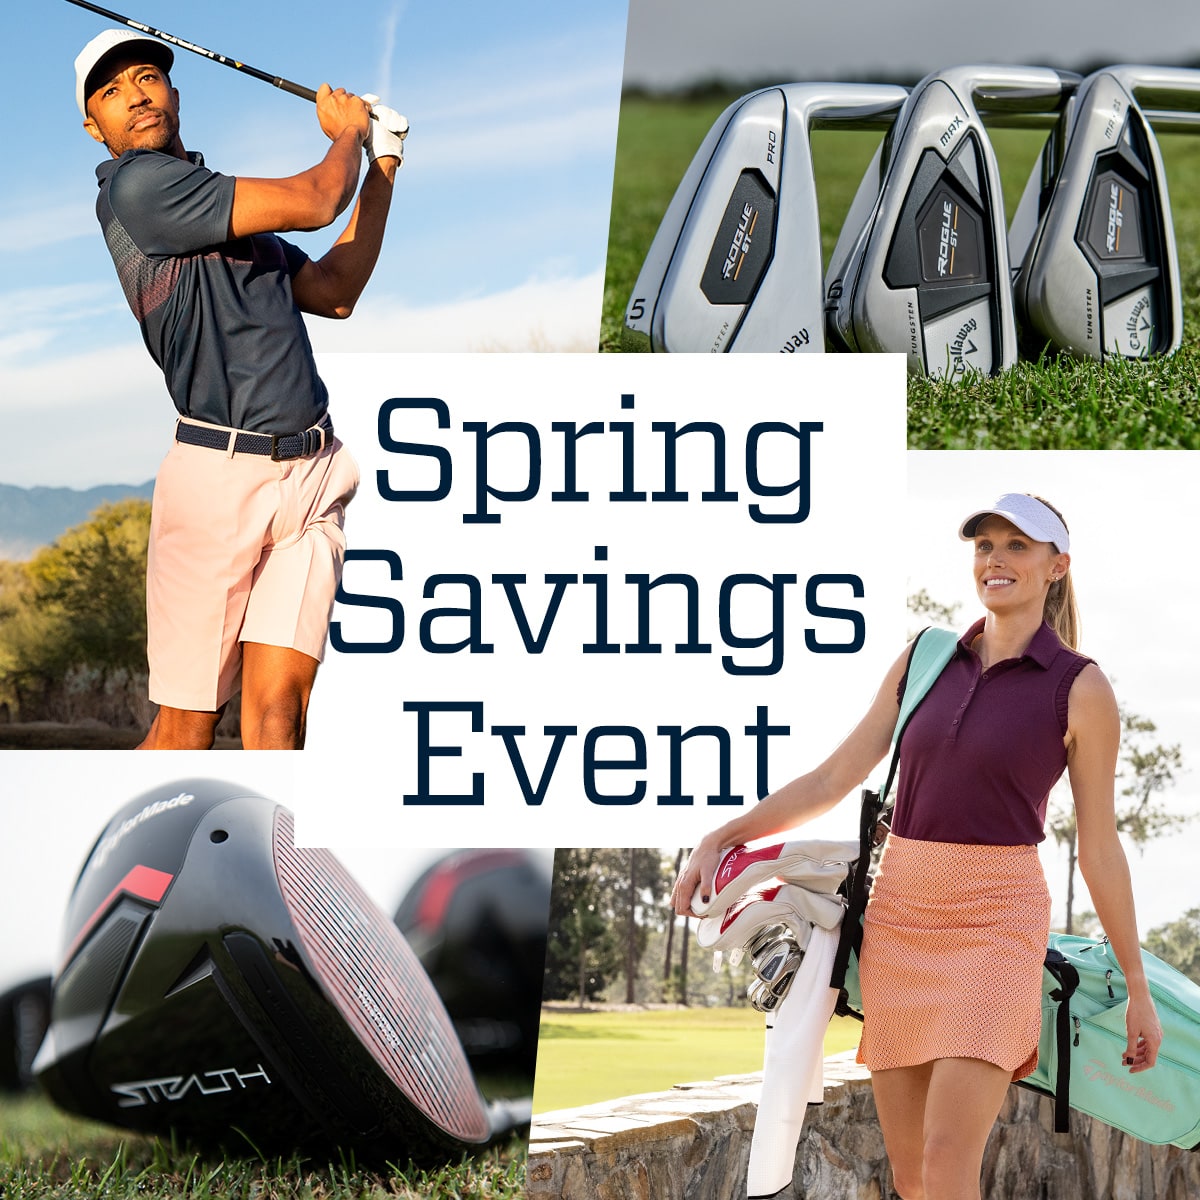 Spring savings event.